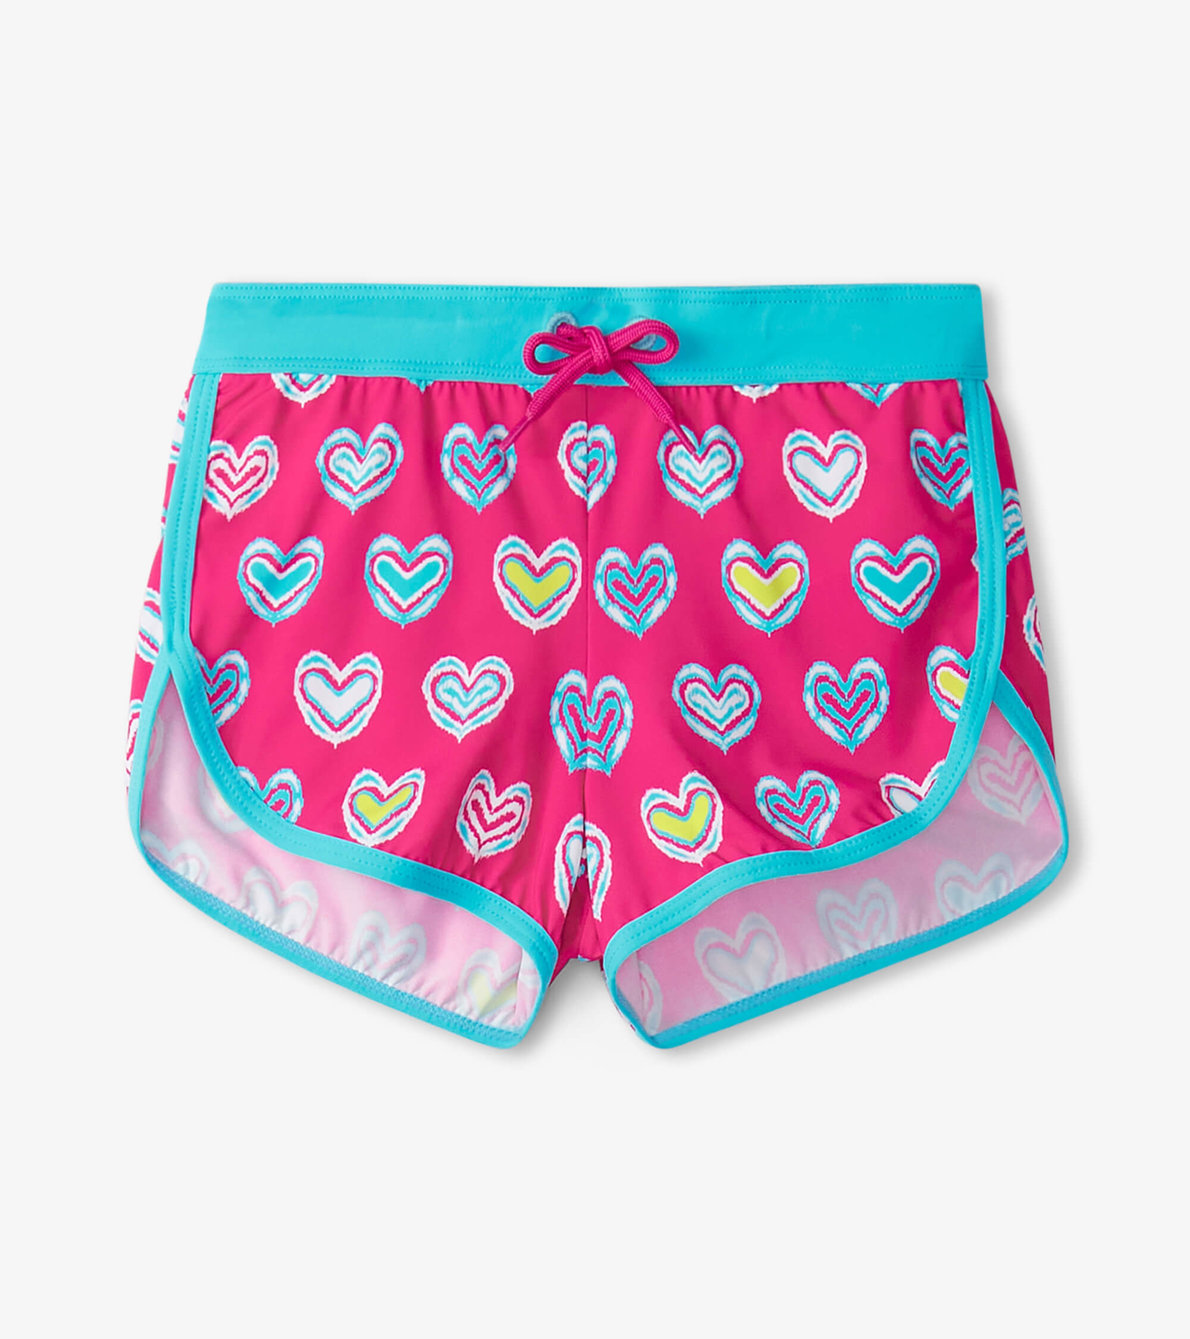 View larger image of Girls Pink Shibori Swim Shorts